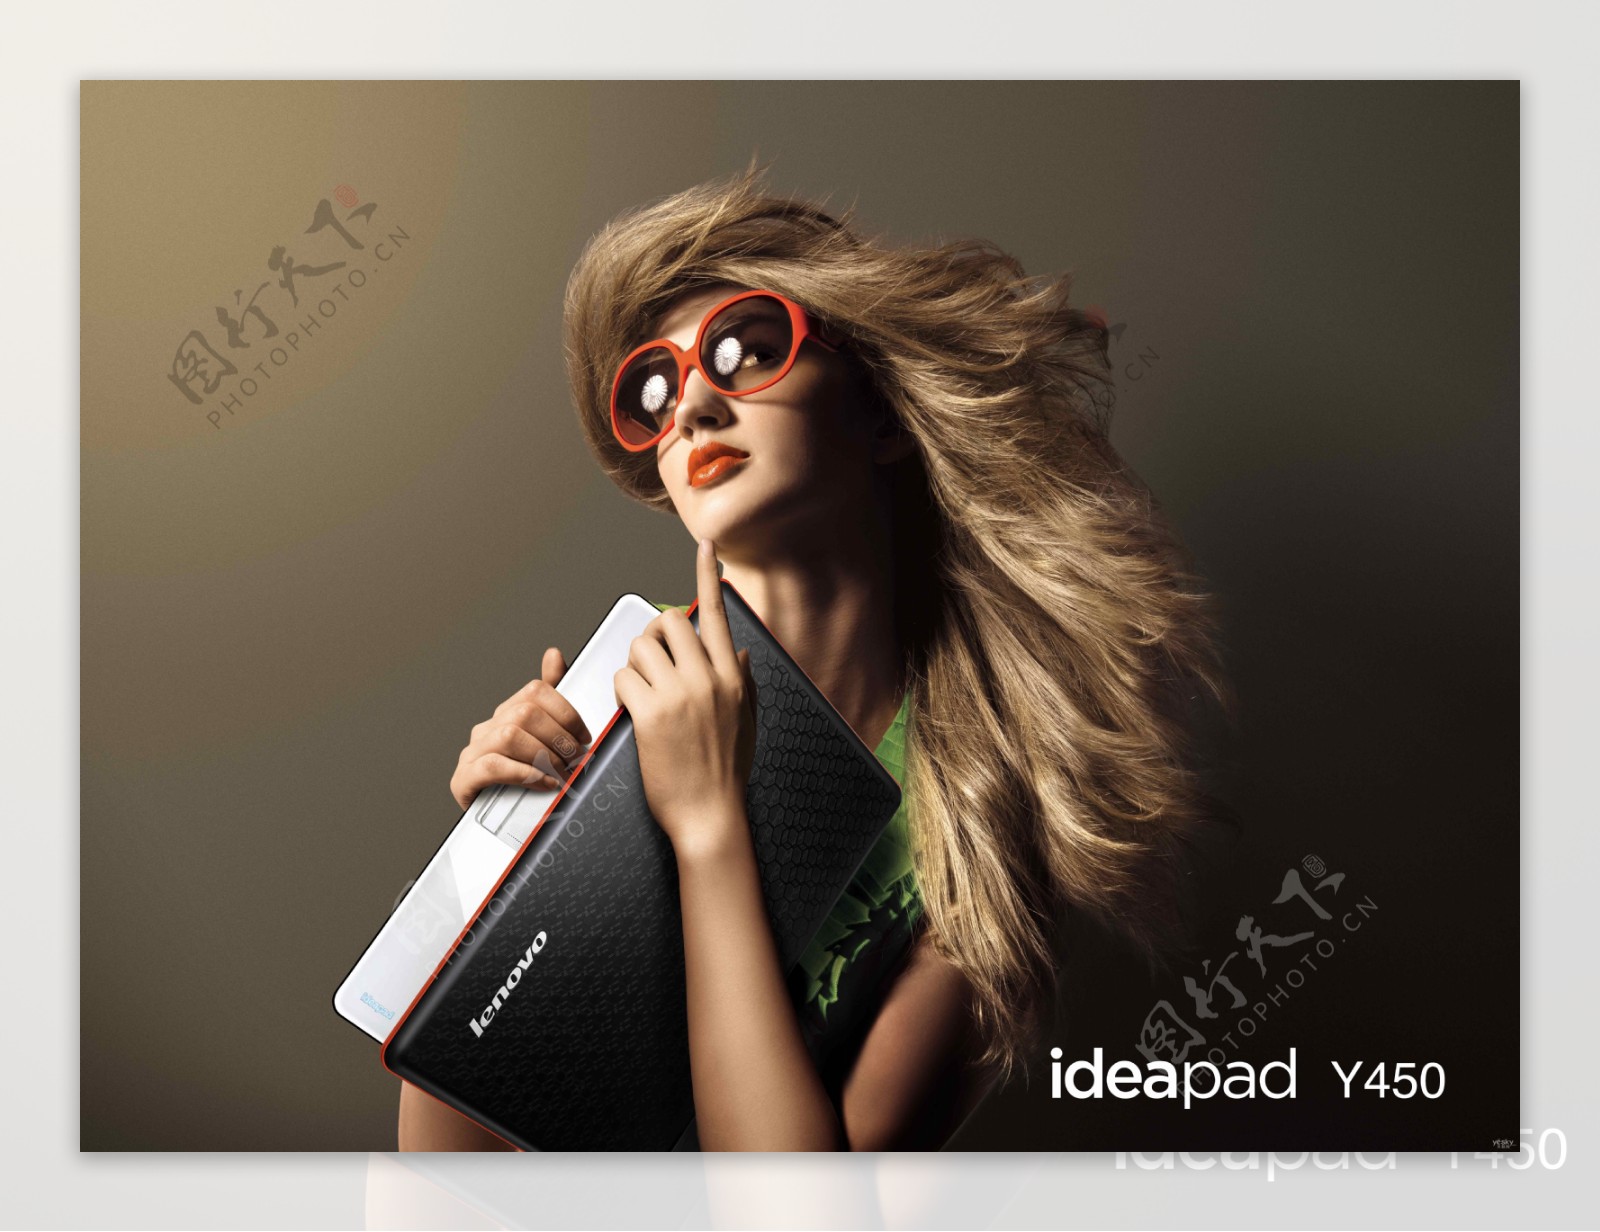 联想IDEAPAD笔记本平面广告图片